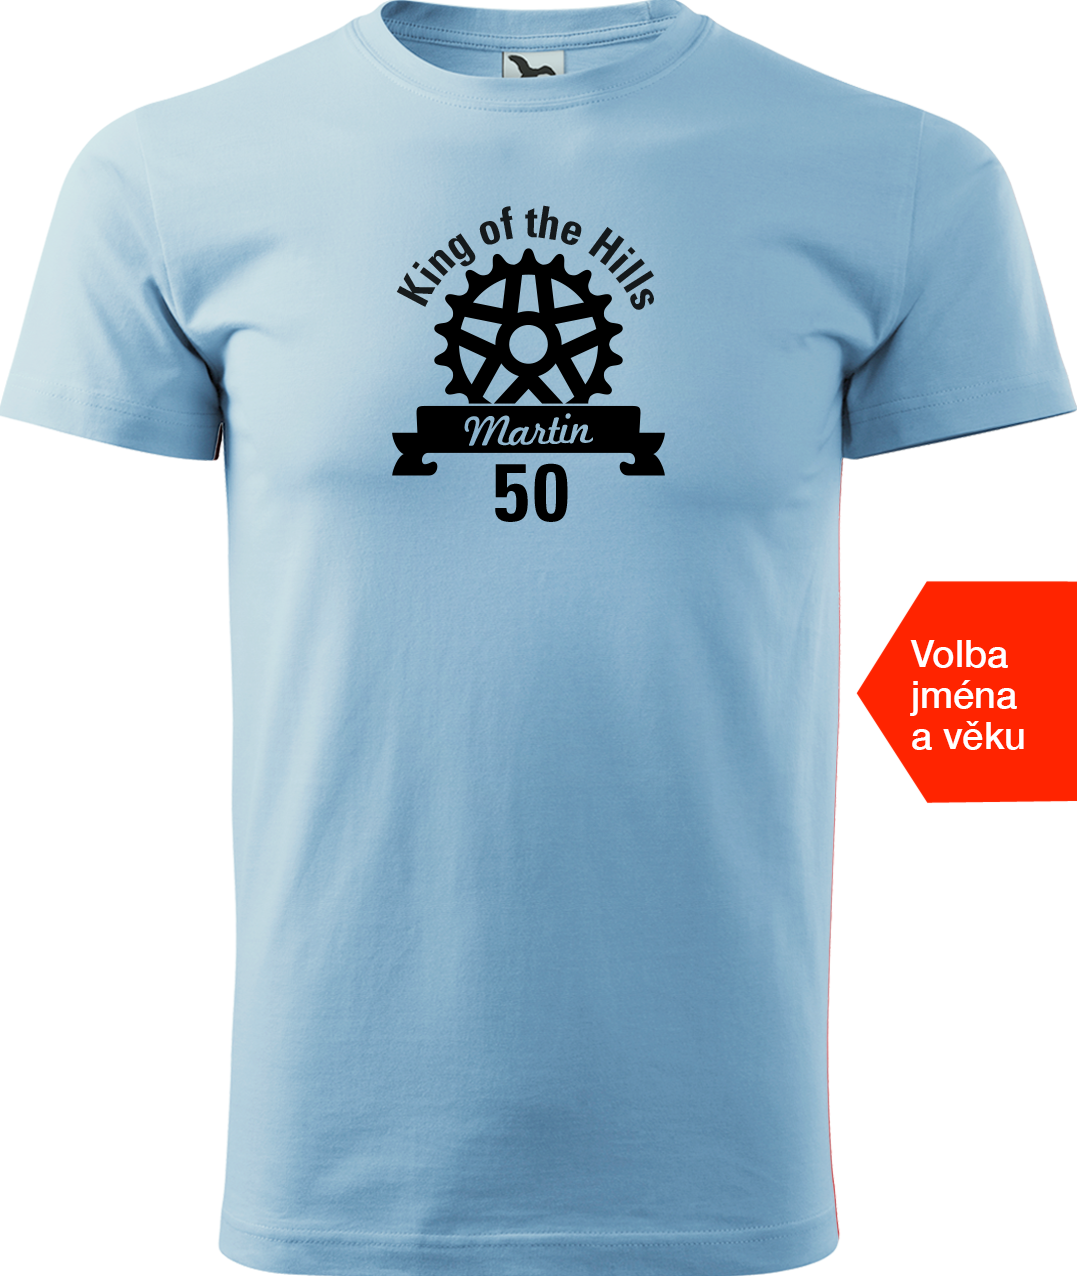 Pánské tričko pro cyklistu se jménem - King of the Hills Velikost: S, Barva: Nebesky modrá (15)